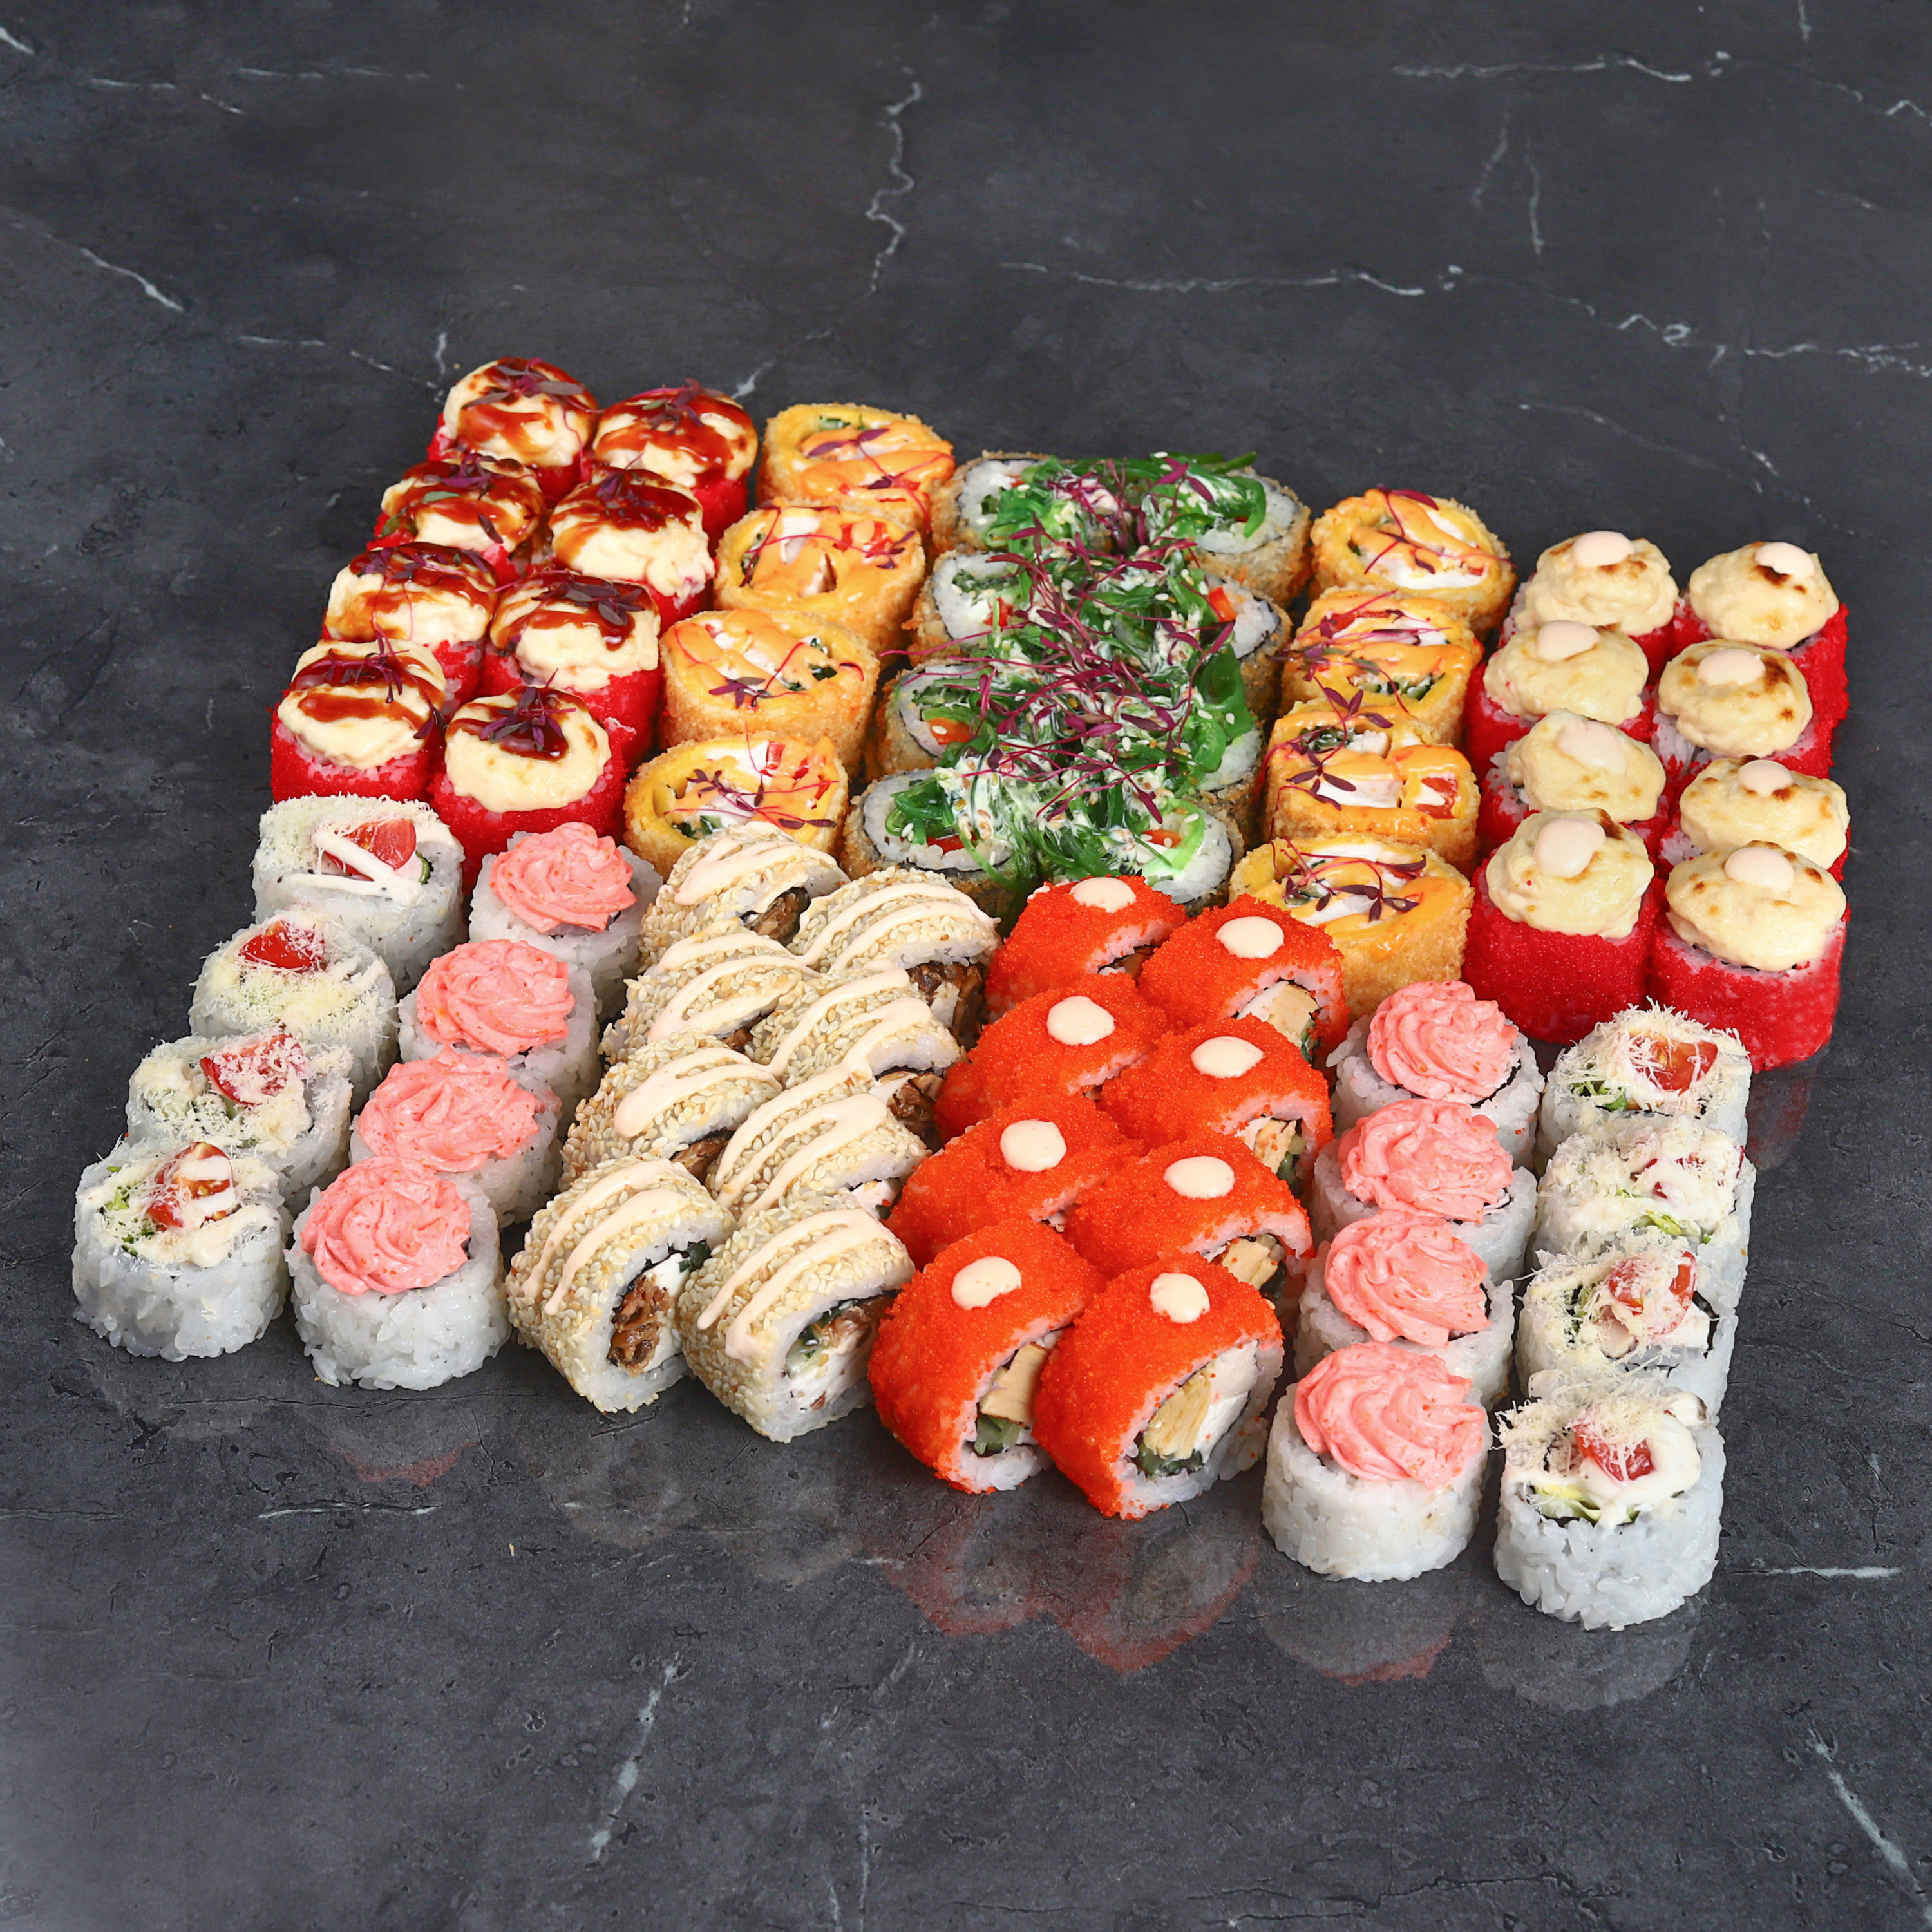 С 3 по 8 января суши-маркет дарит промокод на скидку 10% на любой заказ